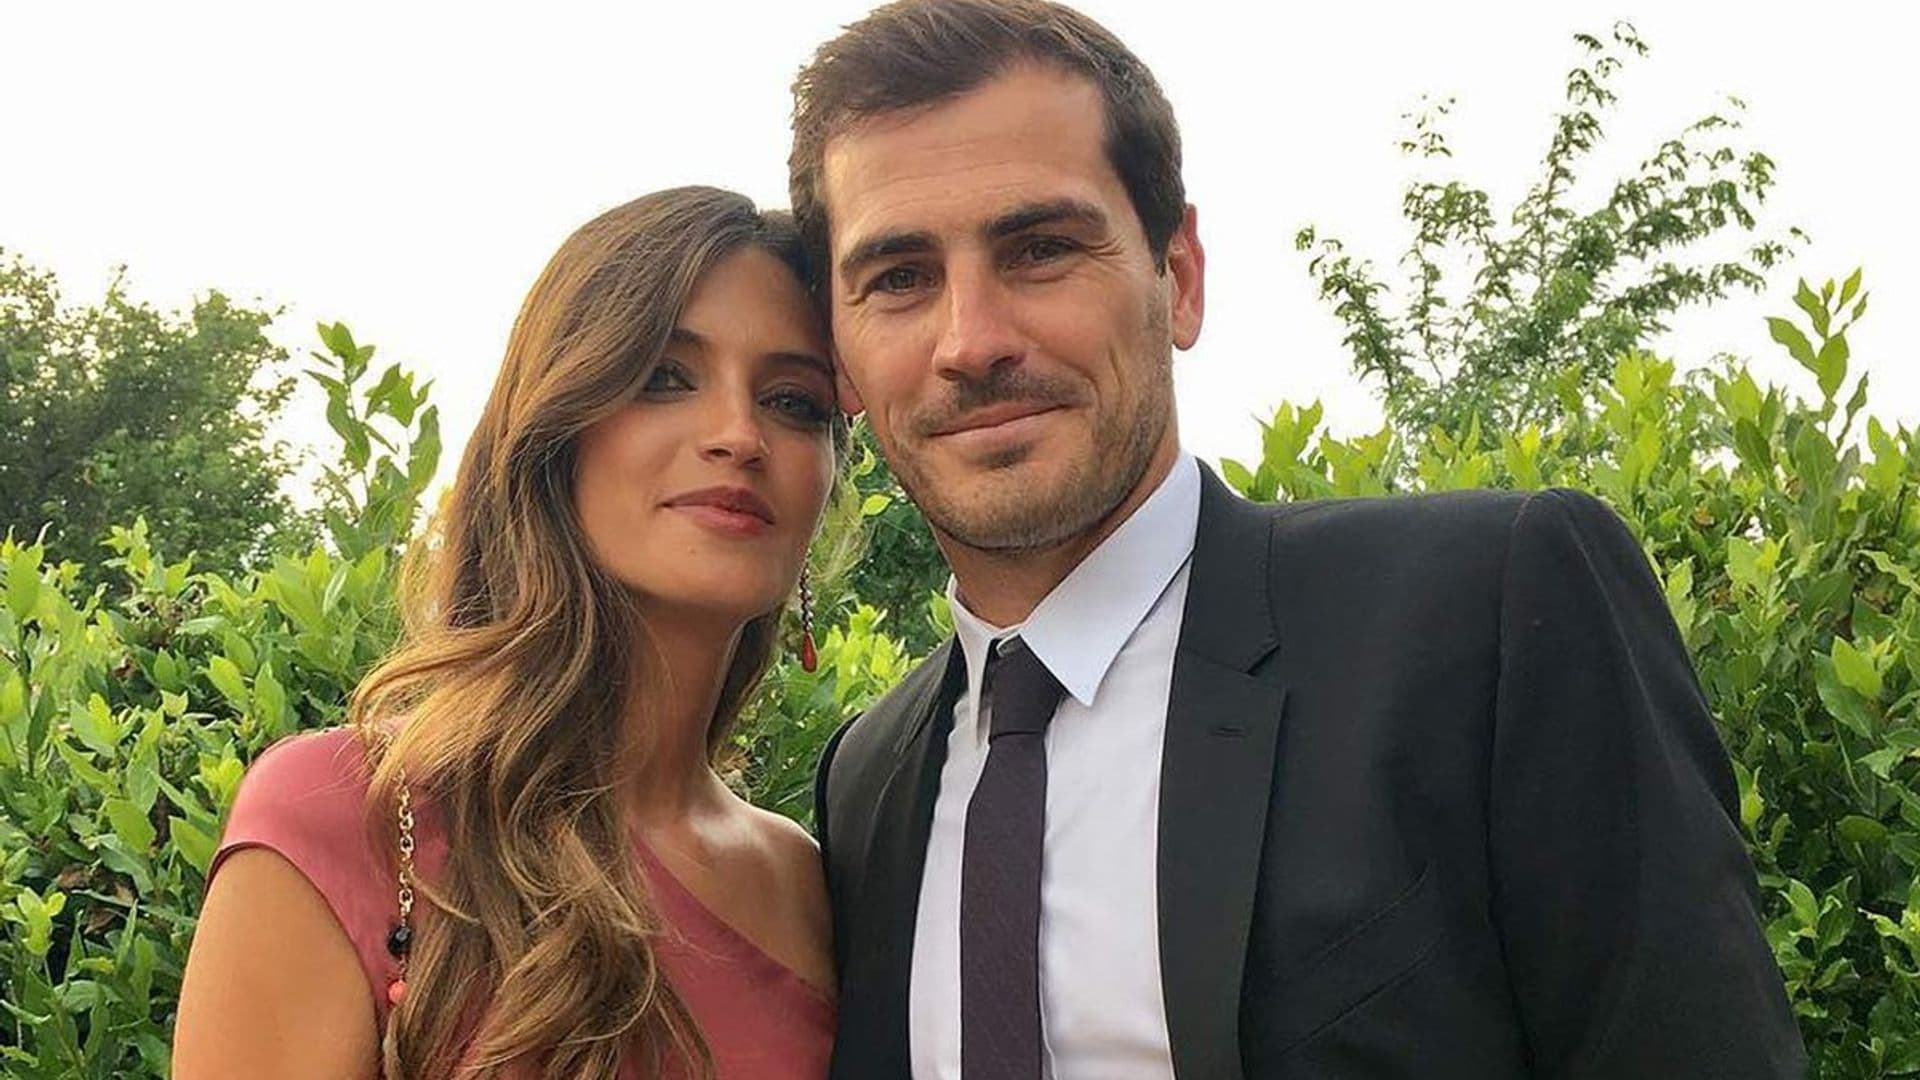 Sara Carbonero e Iker Casillas viven juntos y no se han separado